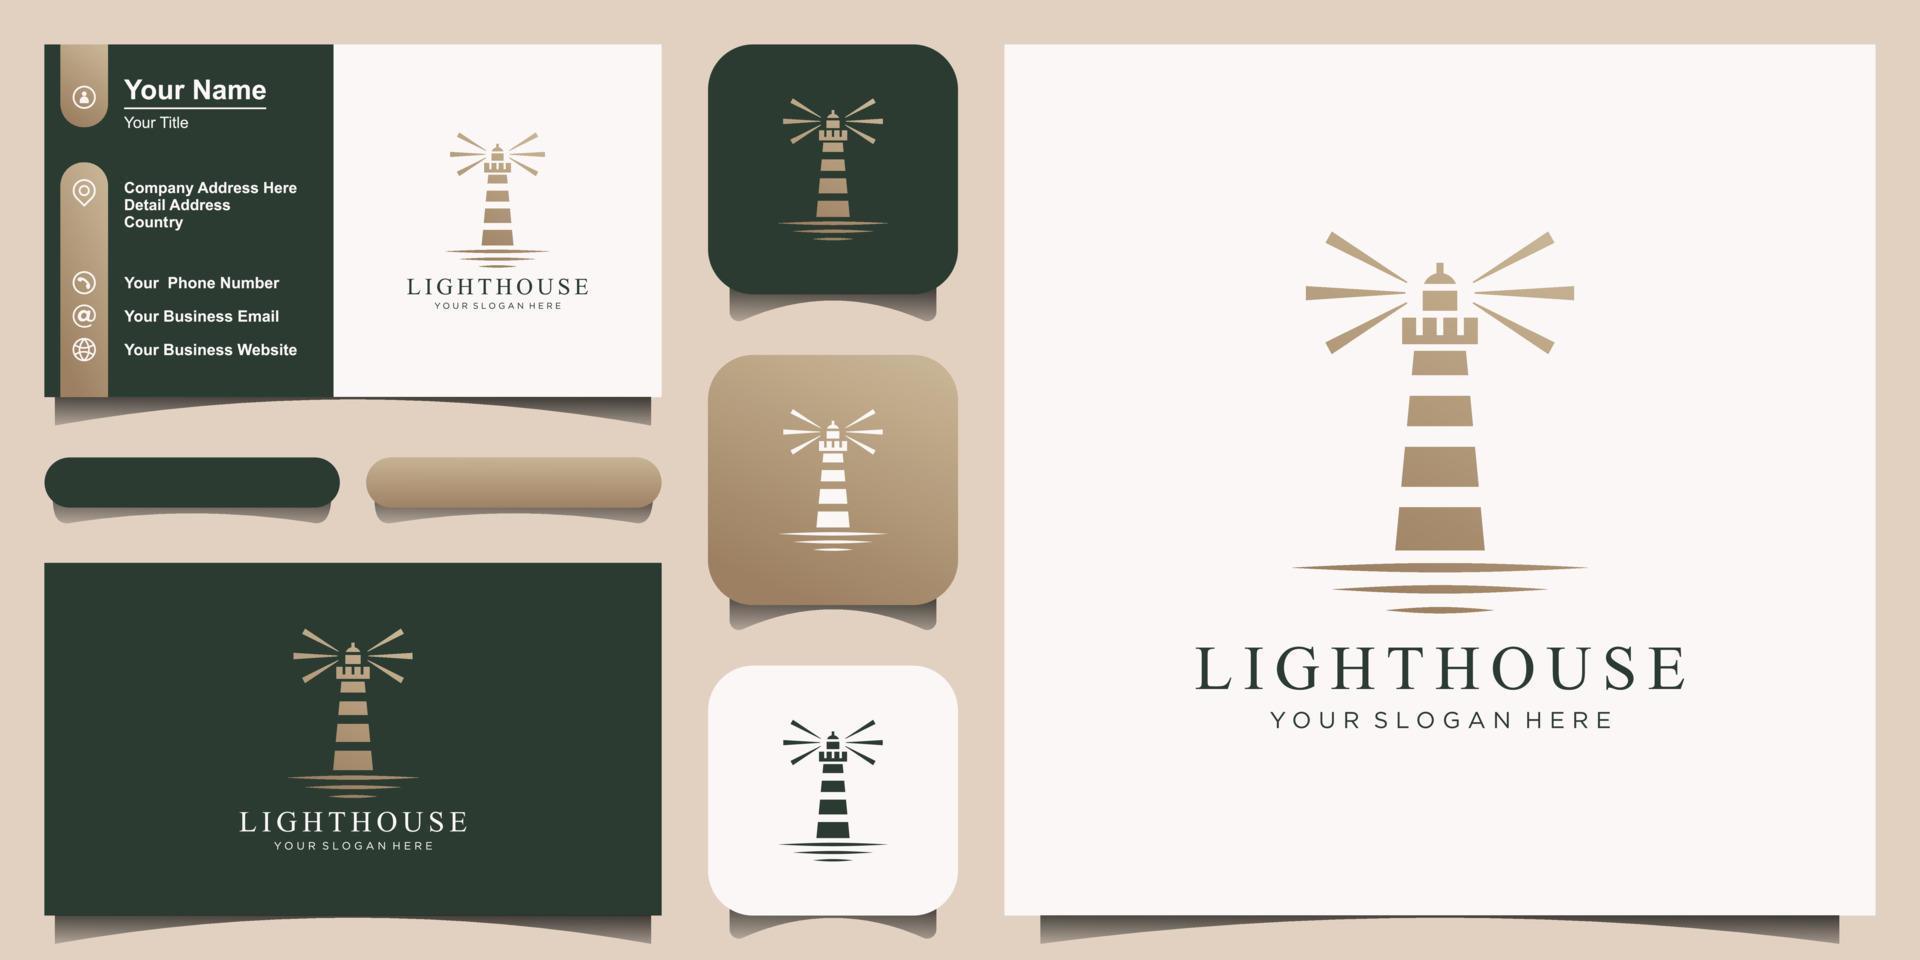 Lighthouse, Beacon logo icon. Vector Illustration.